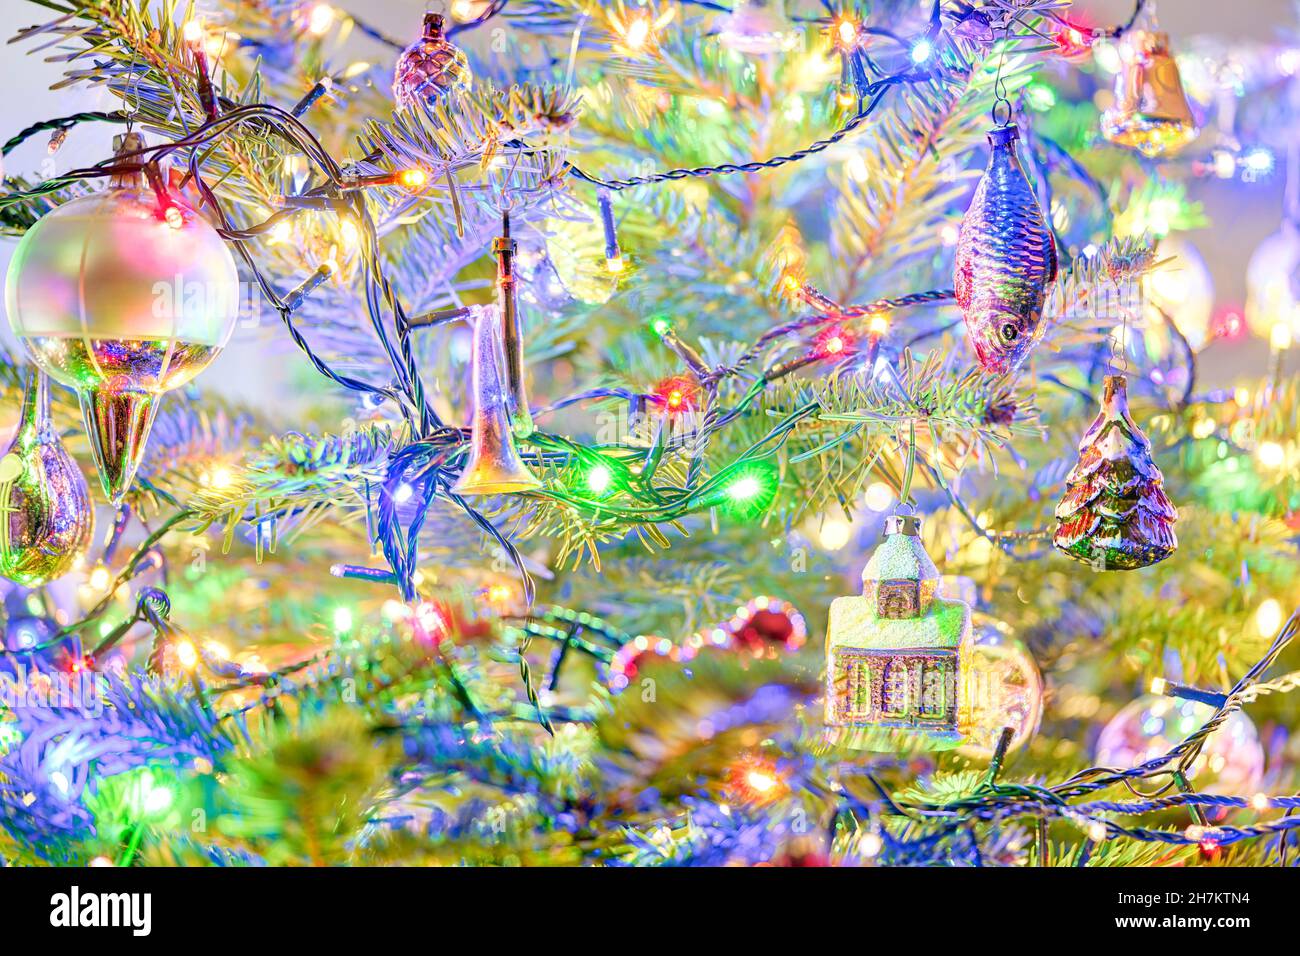 Albero di Natale con decorazioni di Natale vecchi ornamenti di Natale vintage Natale baubles Natale bulbi bolle di Natale colorate luci a LED Foto Stock